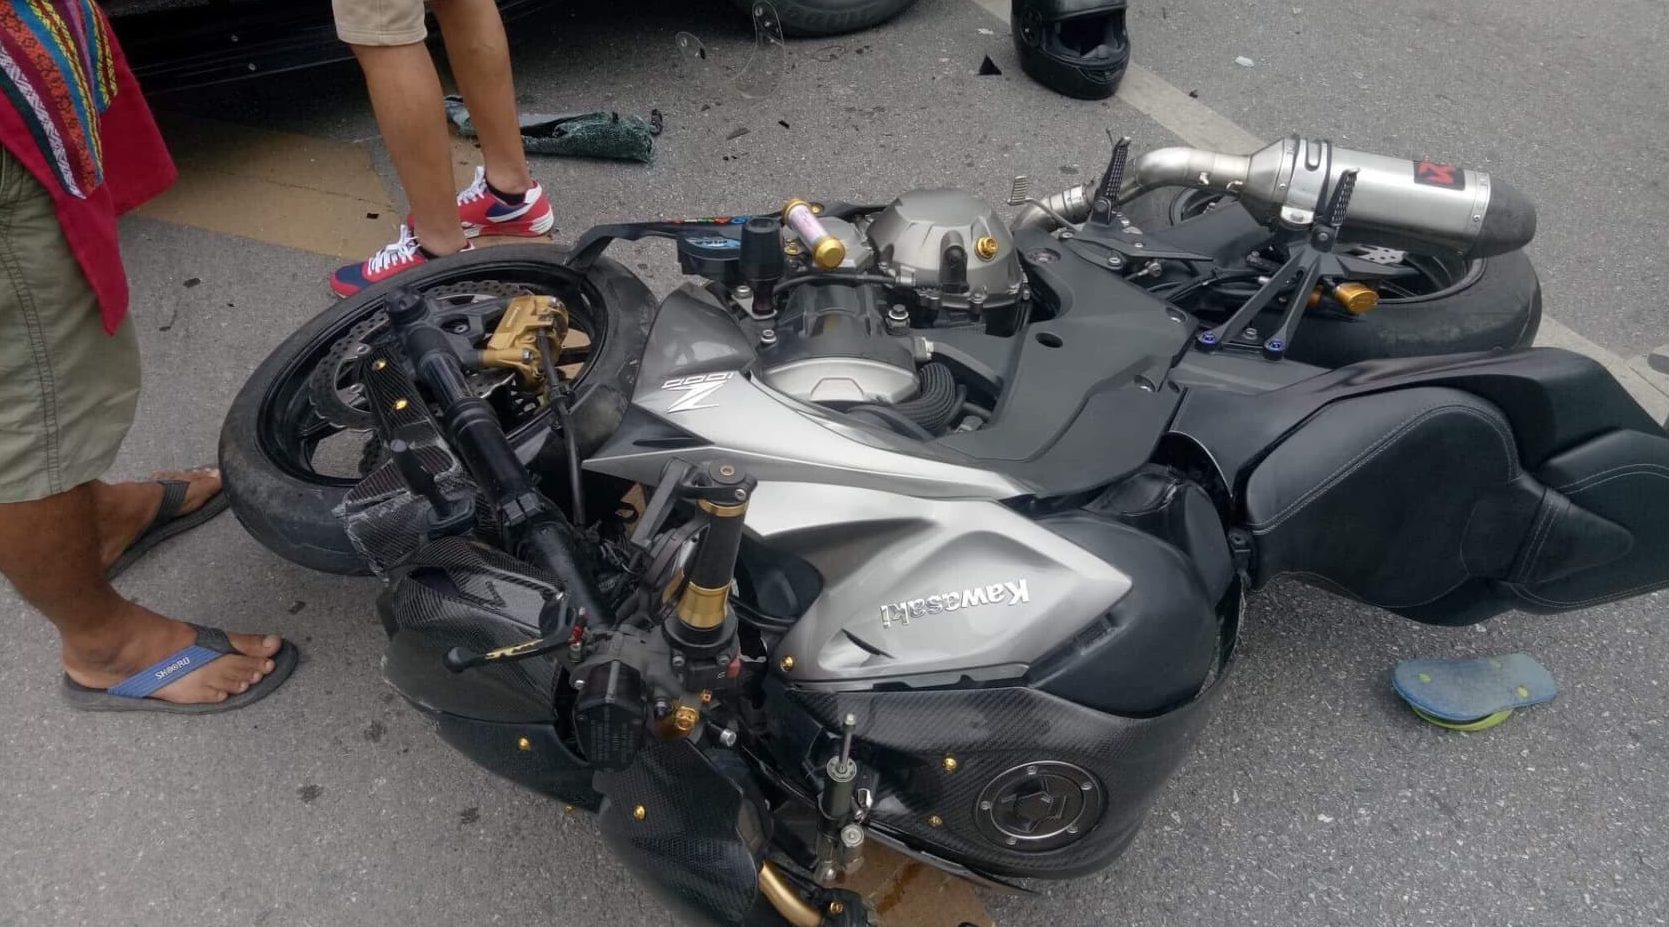 The damaged motorbike. Photo: Jintamas Nacum / Courtesy